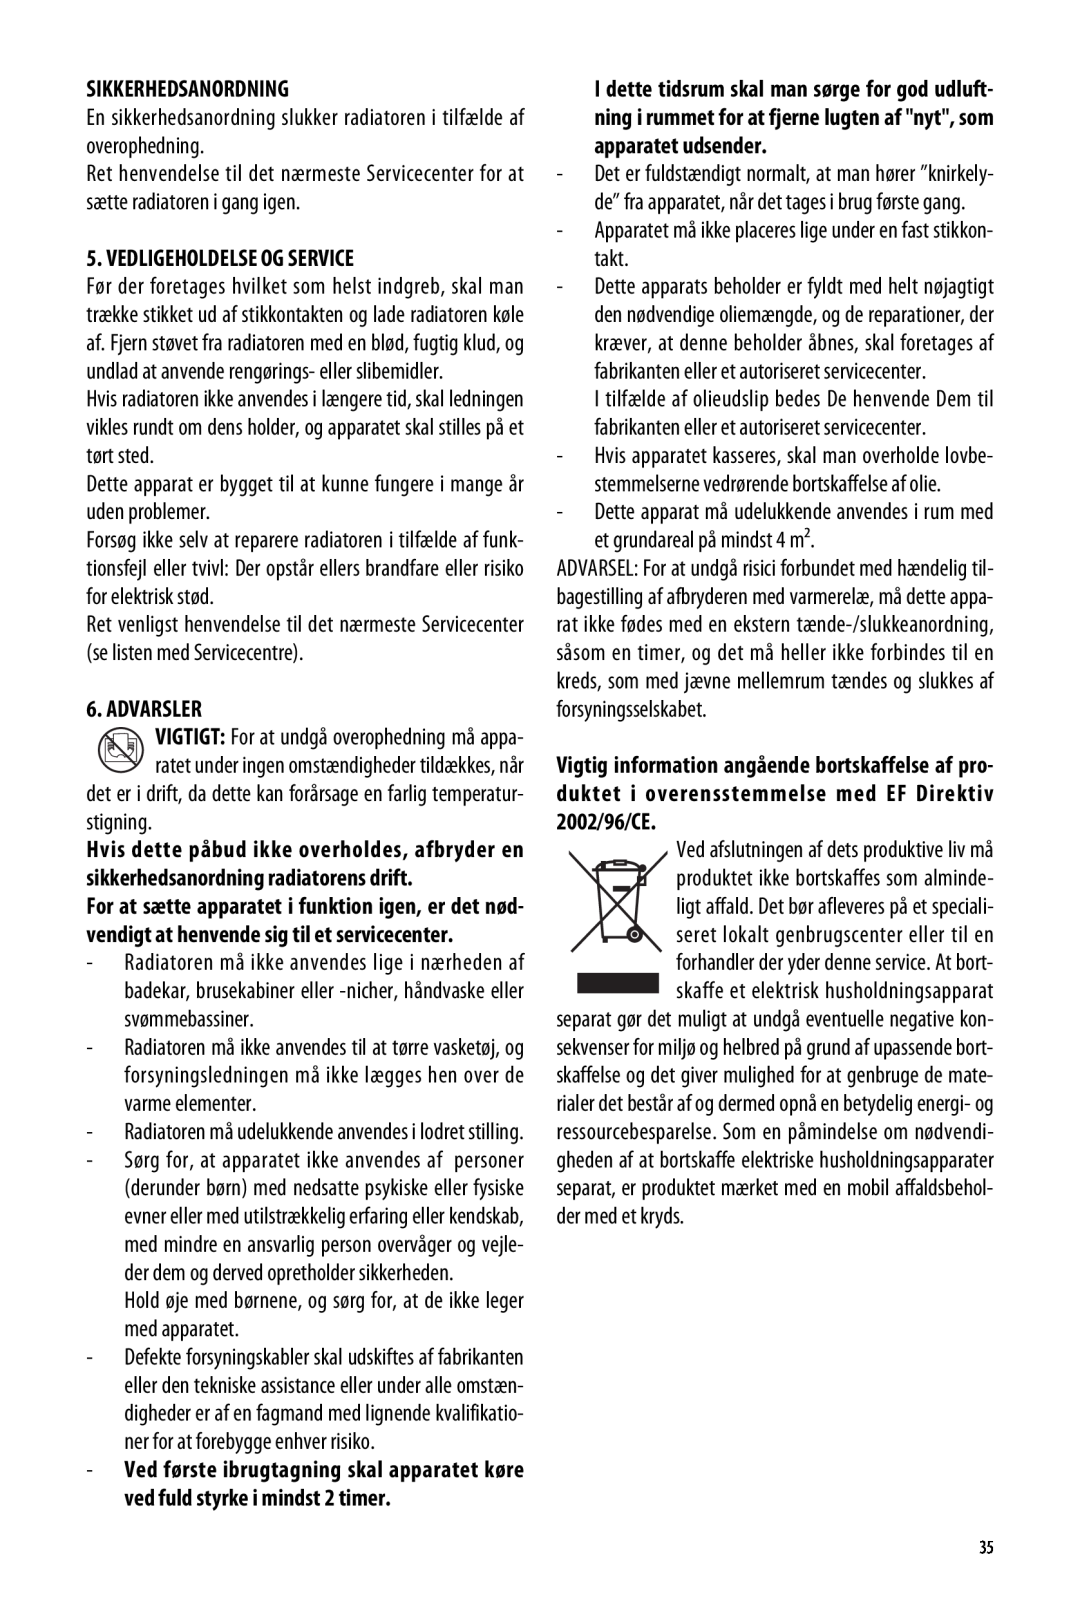 DeLonghi ME 10 manual Sikkerhedsanordning, Vedligeholdelse Og Service, Advarsler 